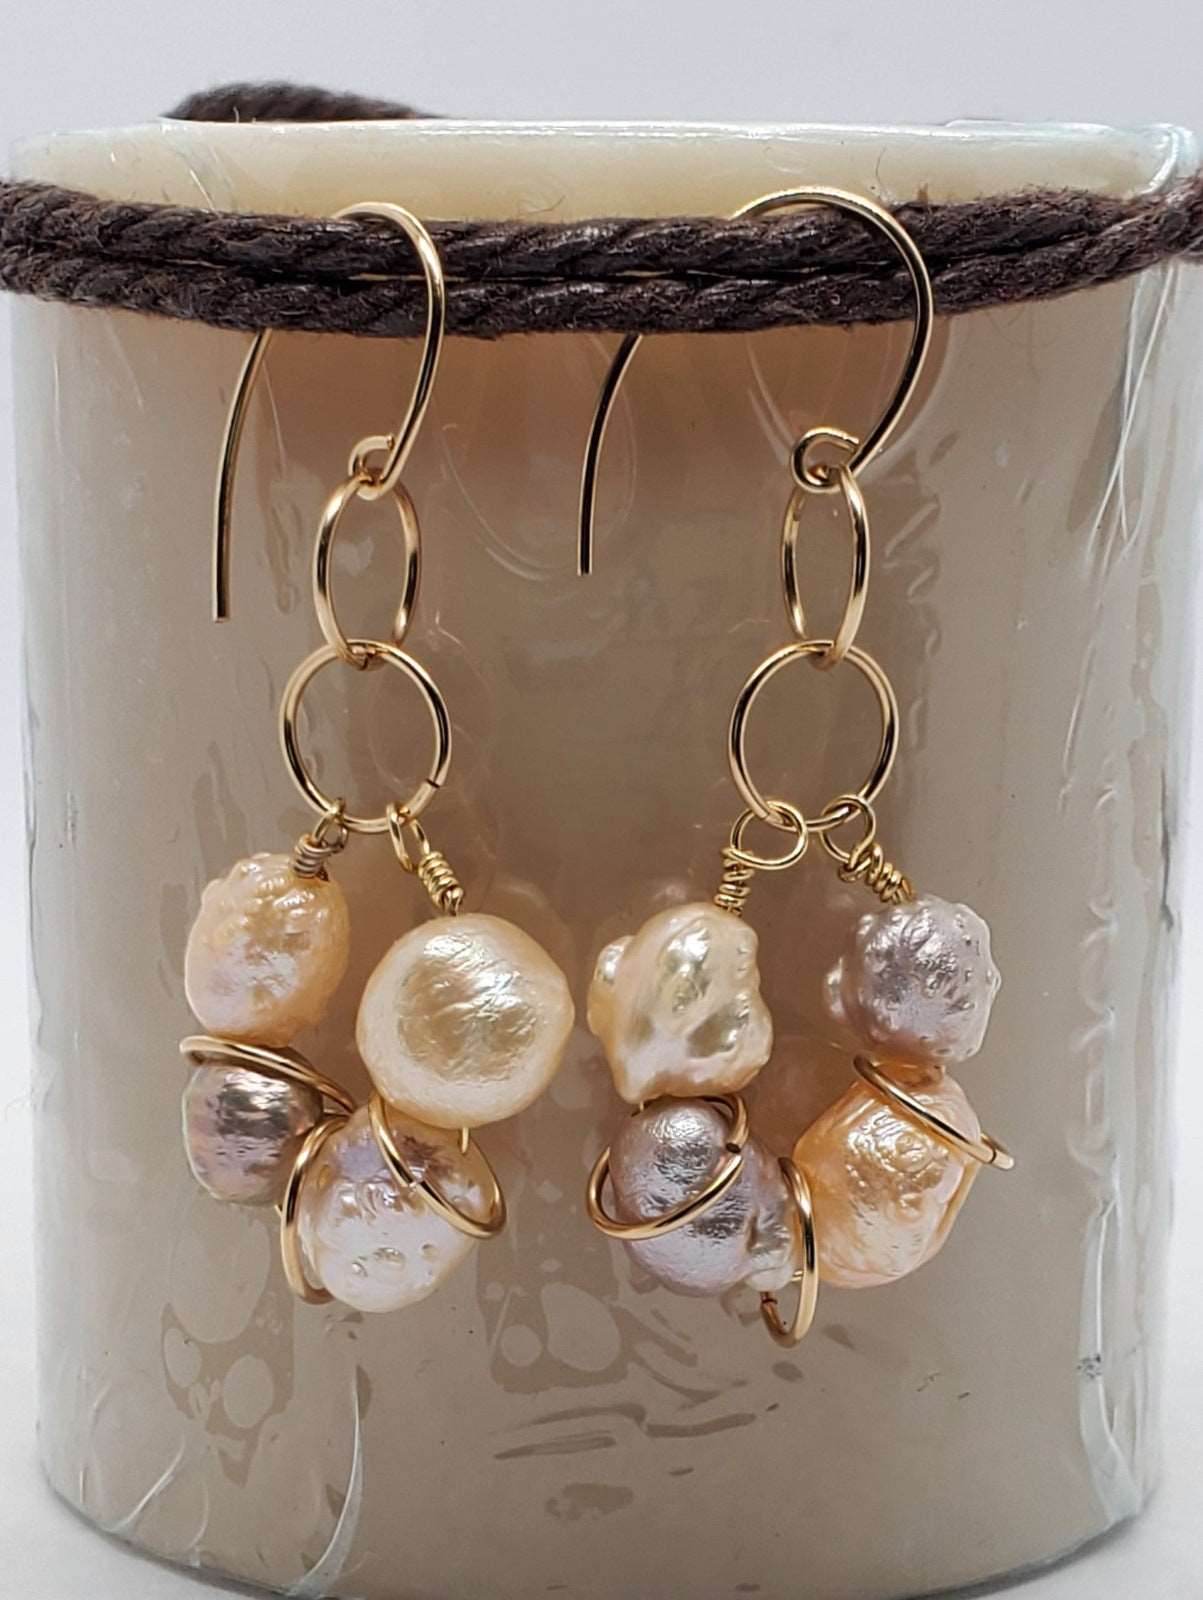 Texture Pearl earrings on rope, dangling earrings on candle photo, handmade earrings, earrings by Jiana Deon,Peachy Pink Drop Earrings